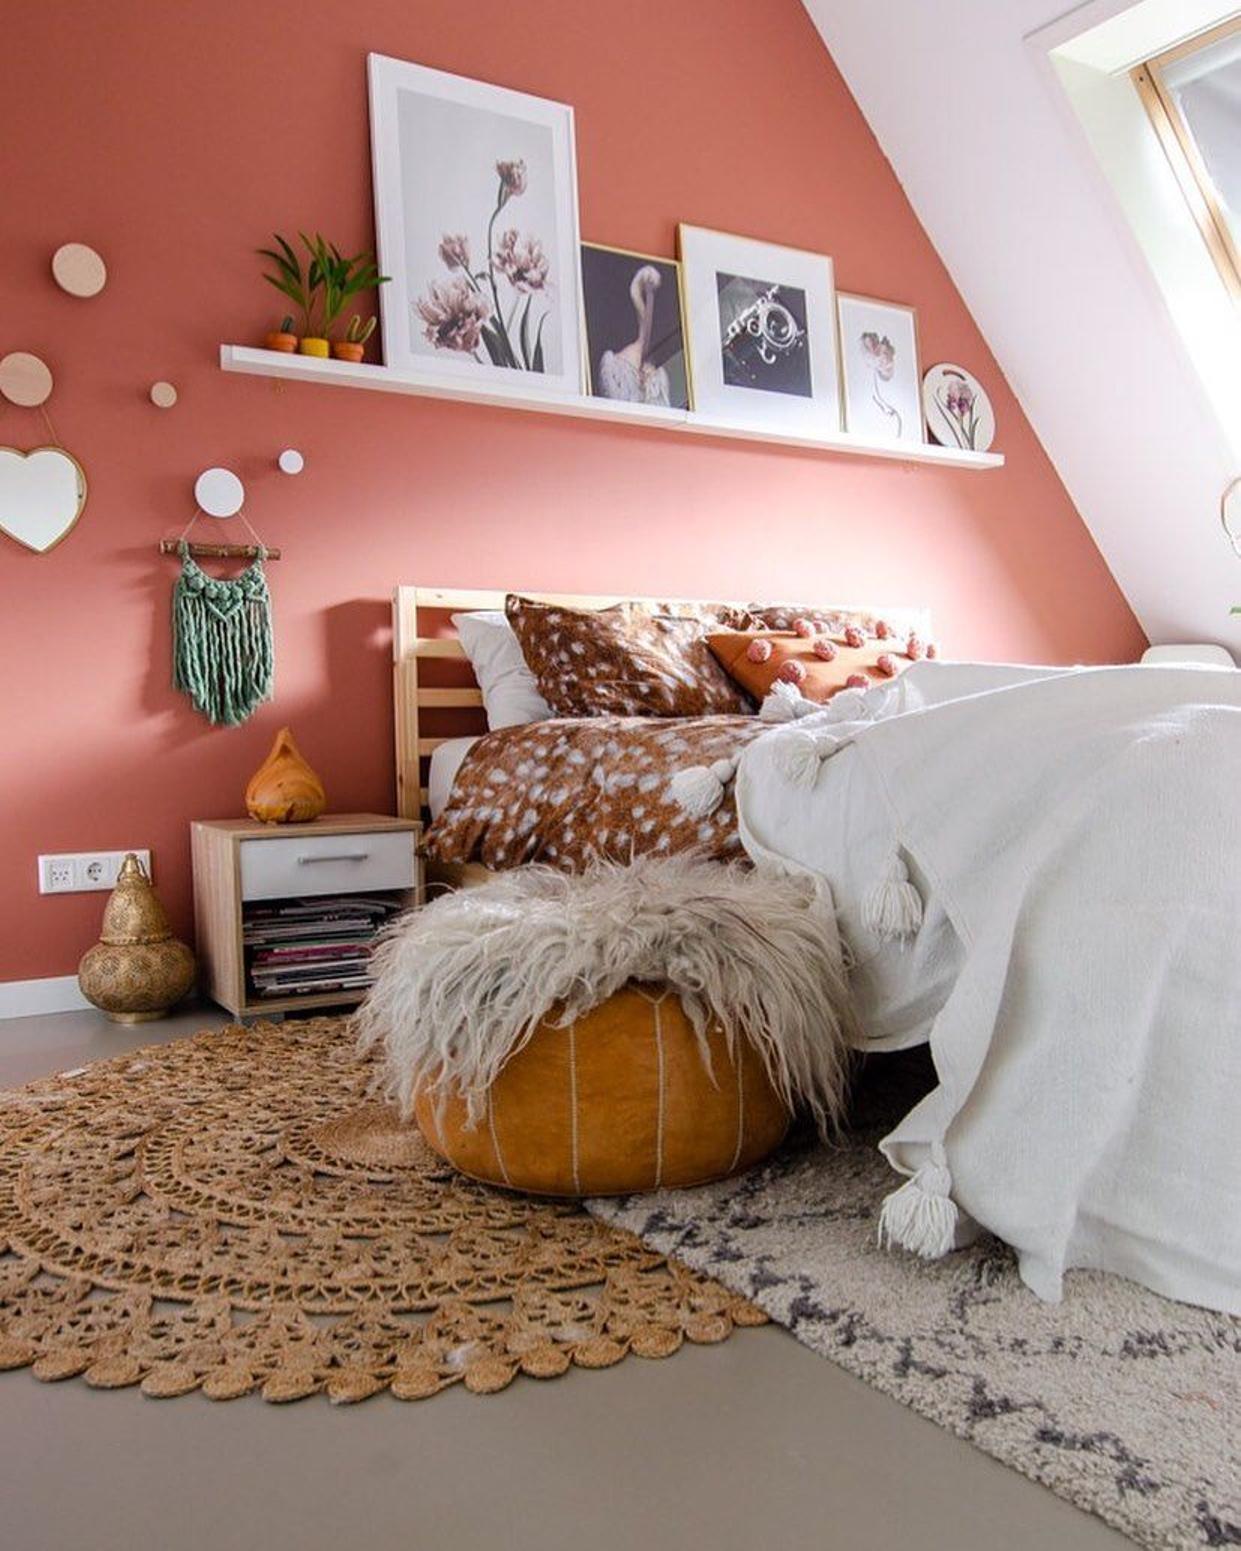 100 Fotos E Ideas Para Pintar Y Decorar Dormitorios Cuartos O Habitaciones Modernas